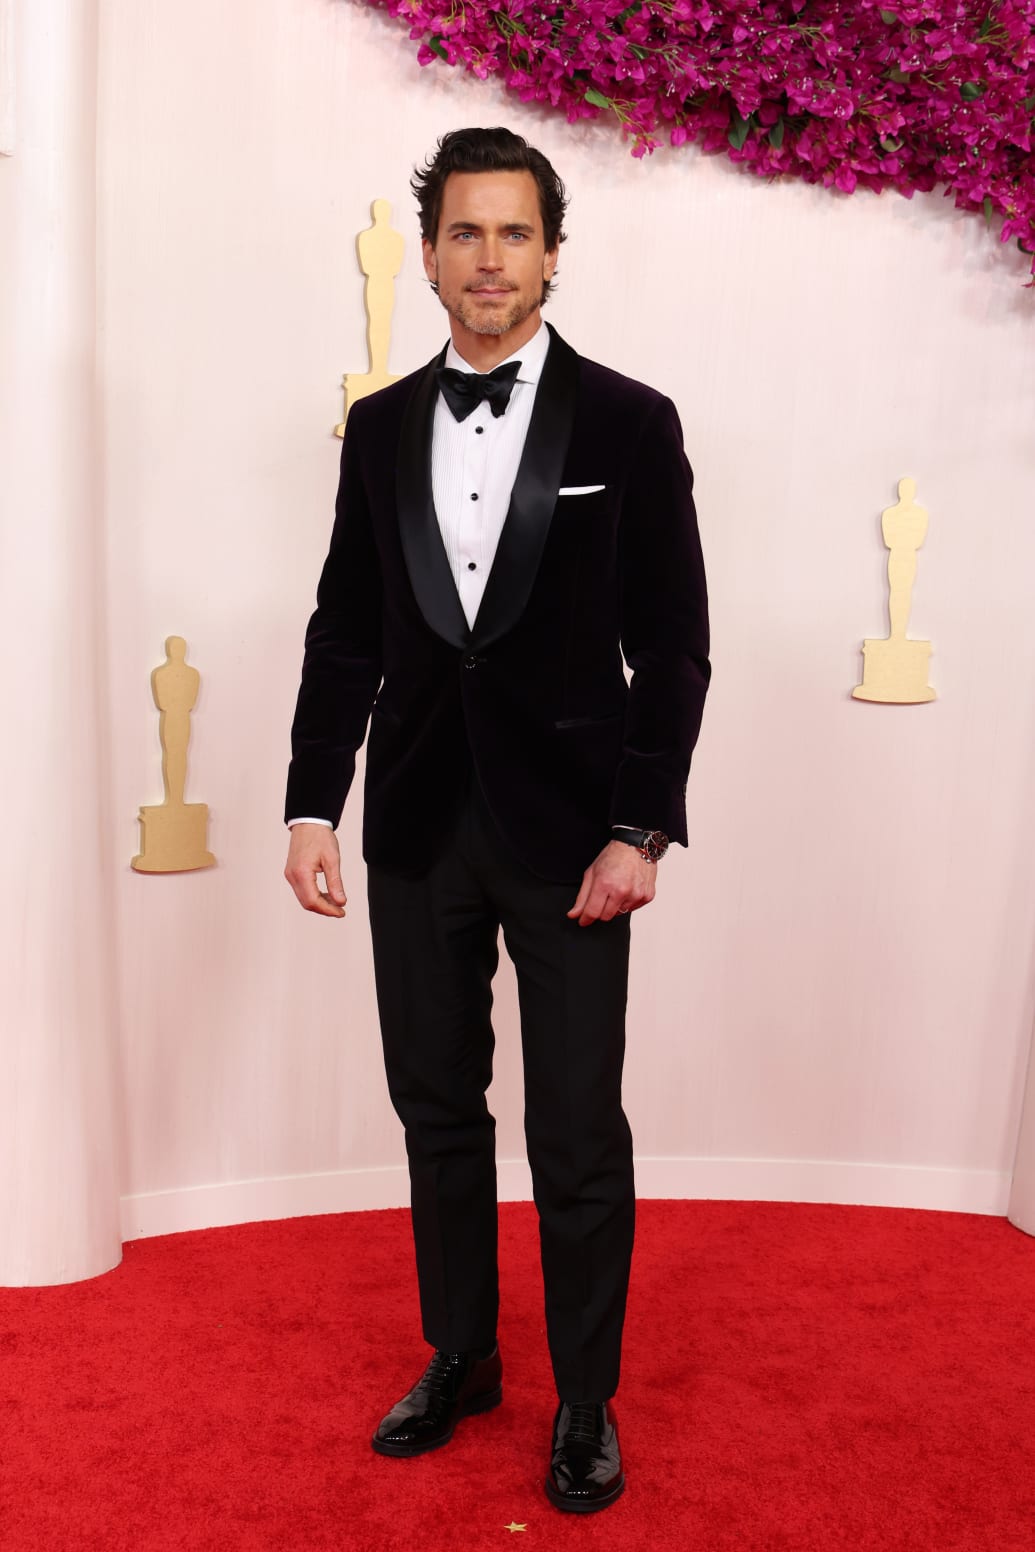 Matt Bomer at the Oscars